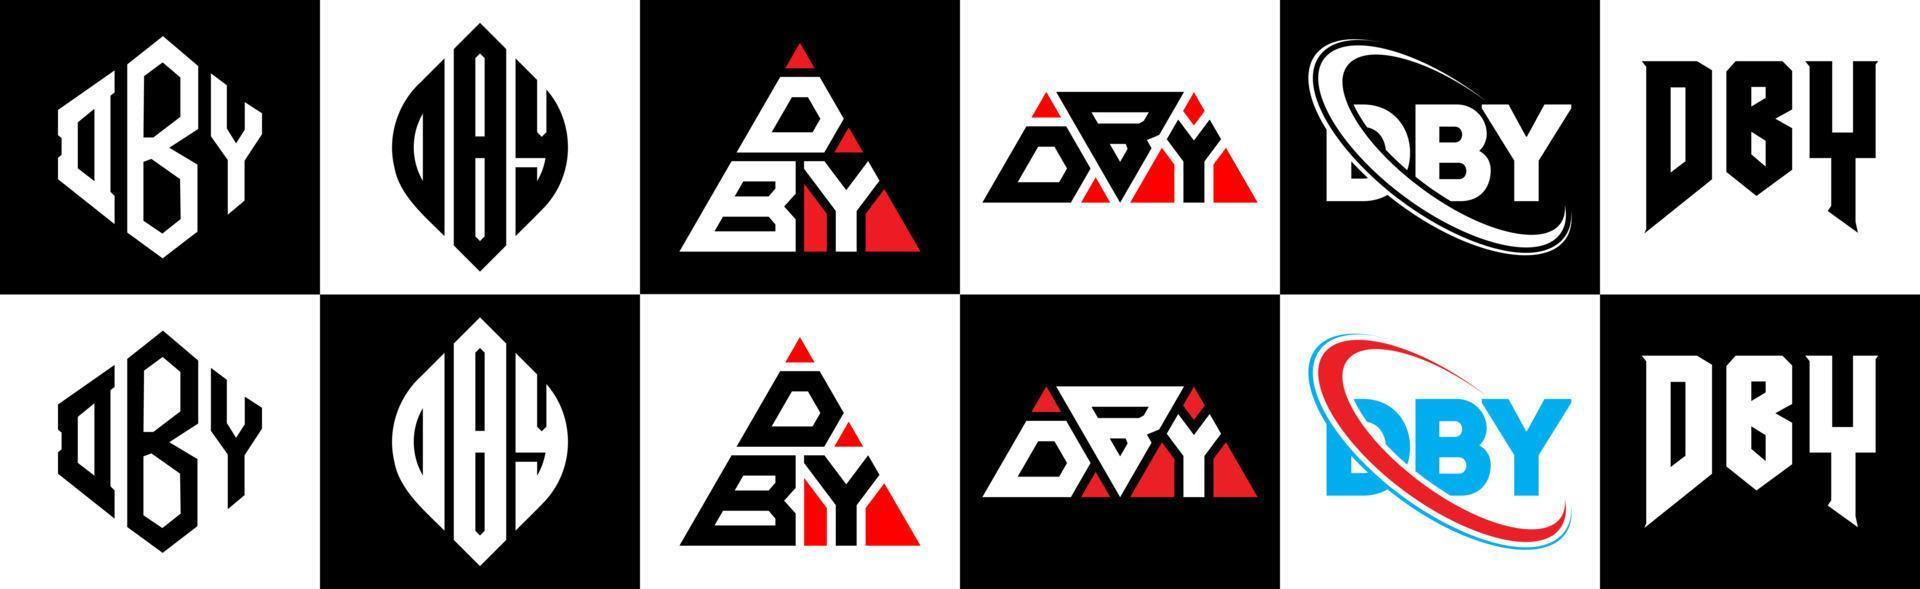 dby-Buchstaben-Logo-Design in sechs Stilen. dby Polygon, Kreis, Dreieck, Sechseck, flacher und einfacher Stil mit schwarz-weißem Buchstabenlogo in einer Zeichenfläche. dby minimalistisches und klassisches Logo vektor